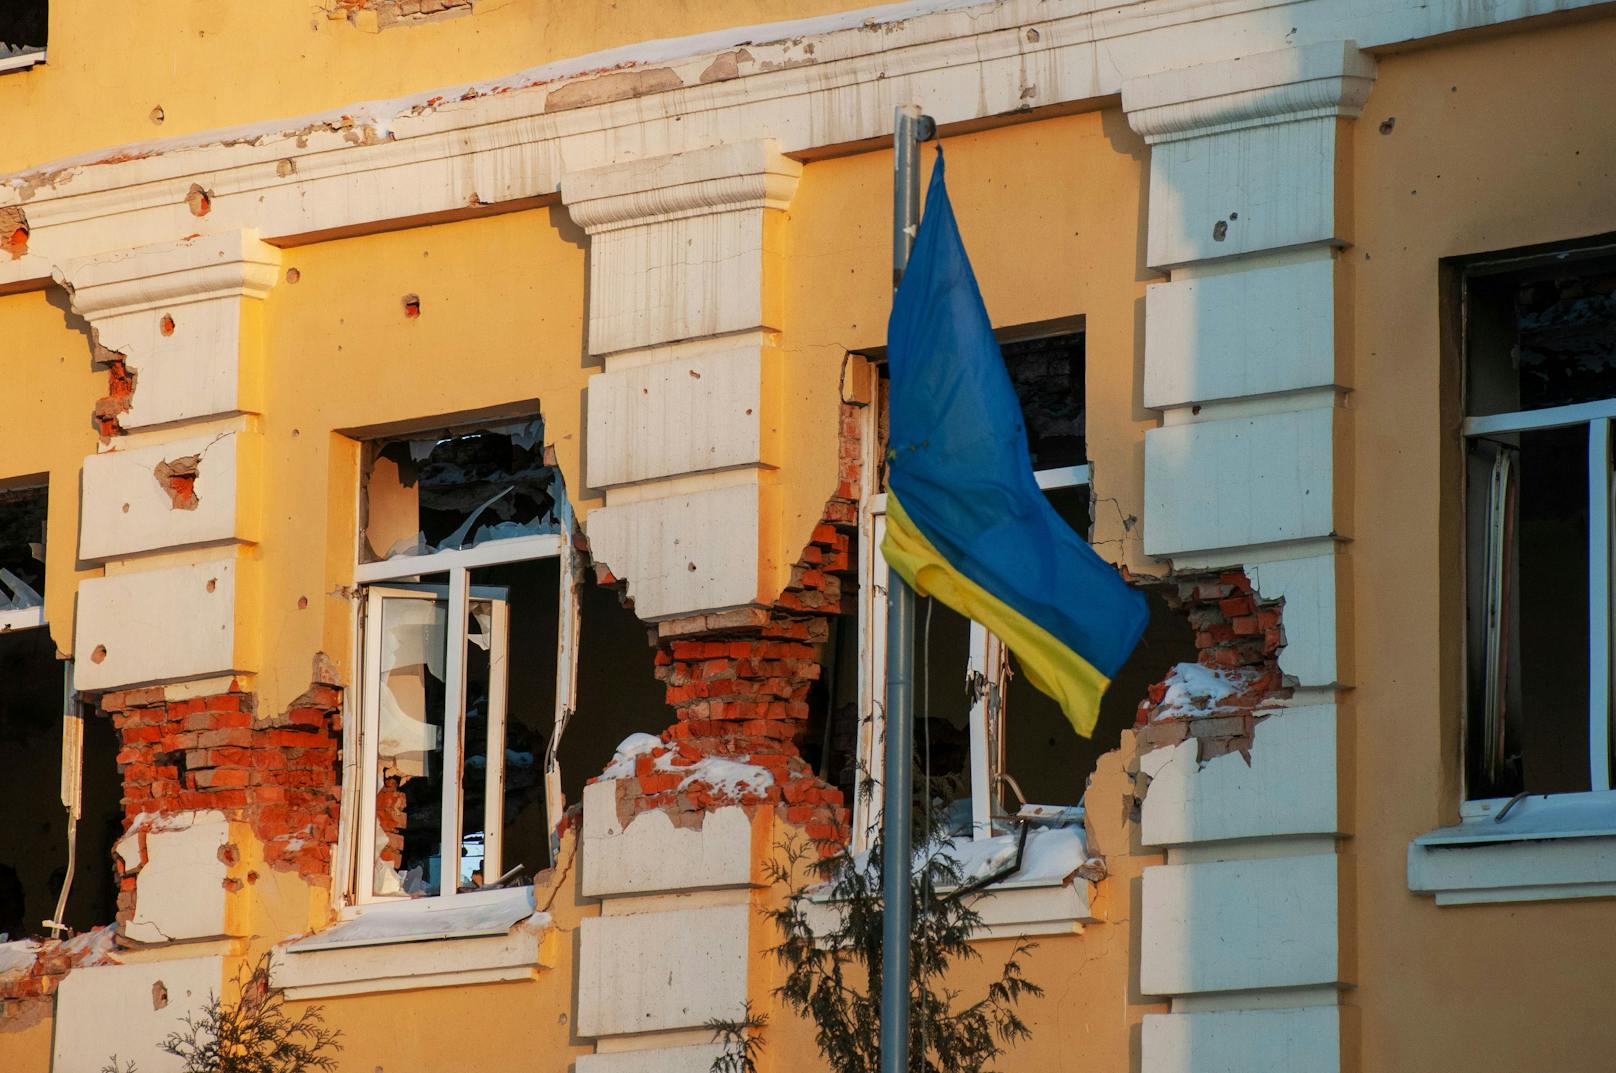 Wir schreiben Tag 17 im Ukraine-Krieg und die Angriffe der russischen Truppen auf die Städte hören nicht auf.